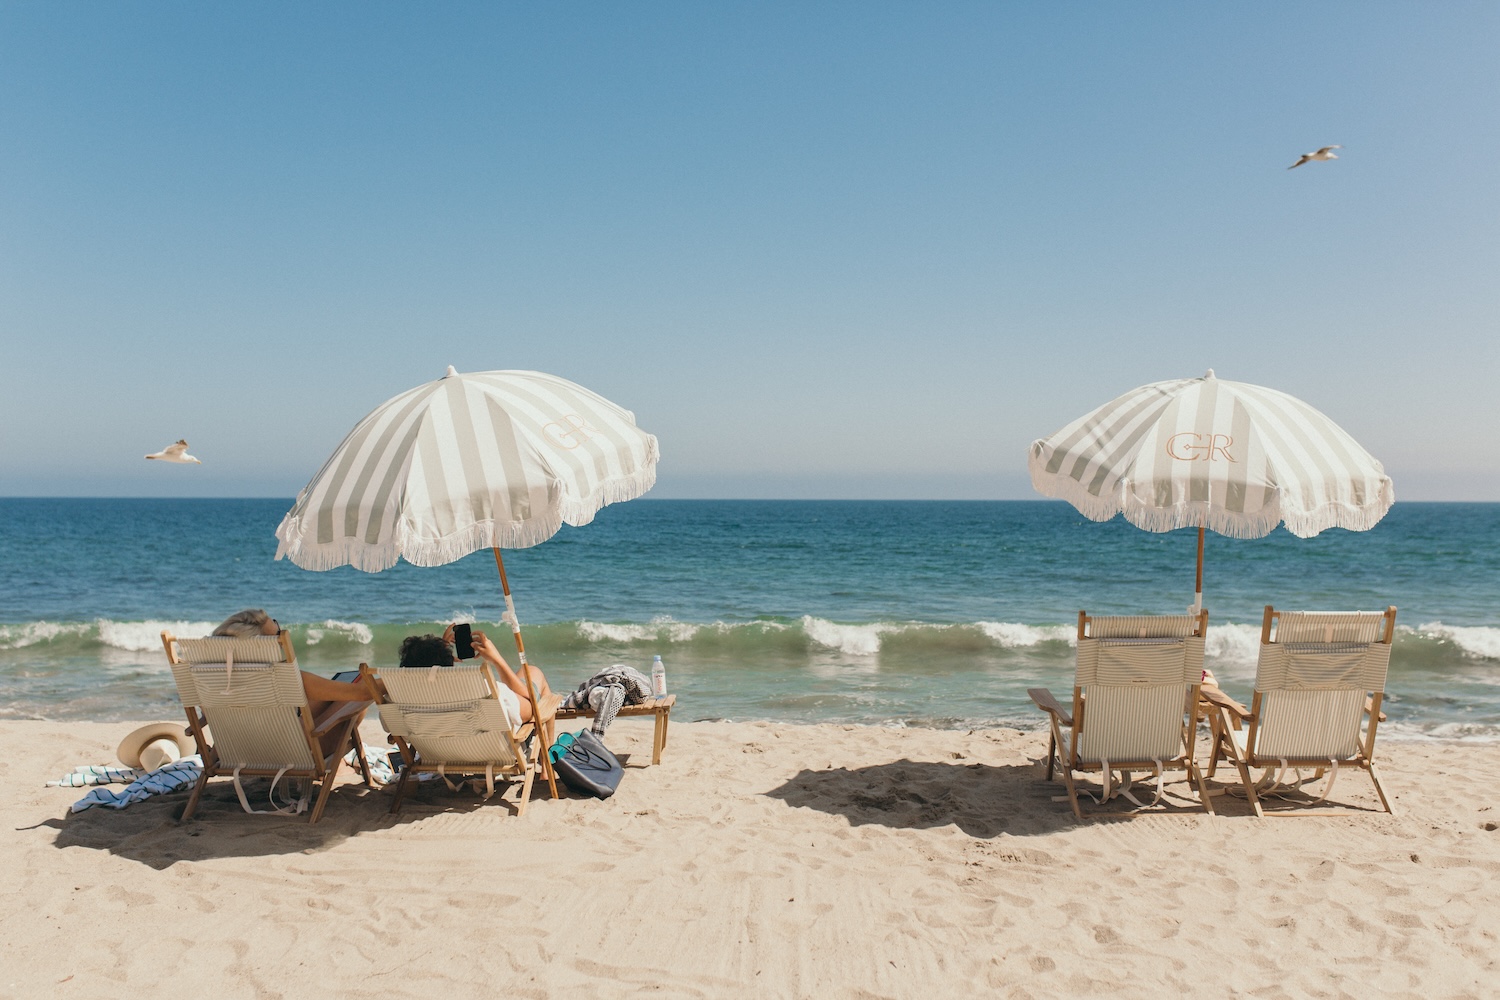 two beach umbrellas with beach chairs, sand, ocean